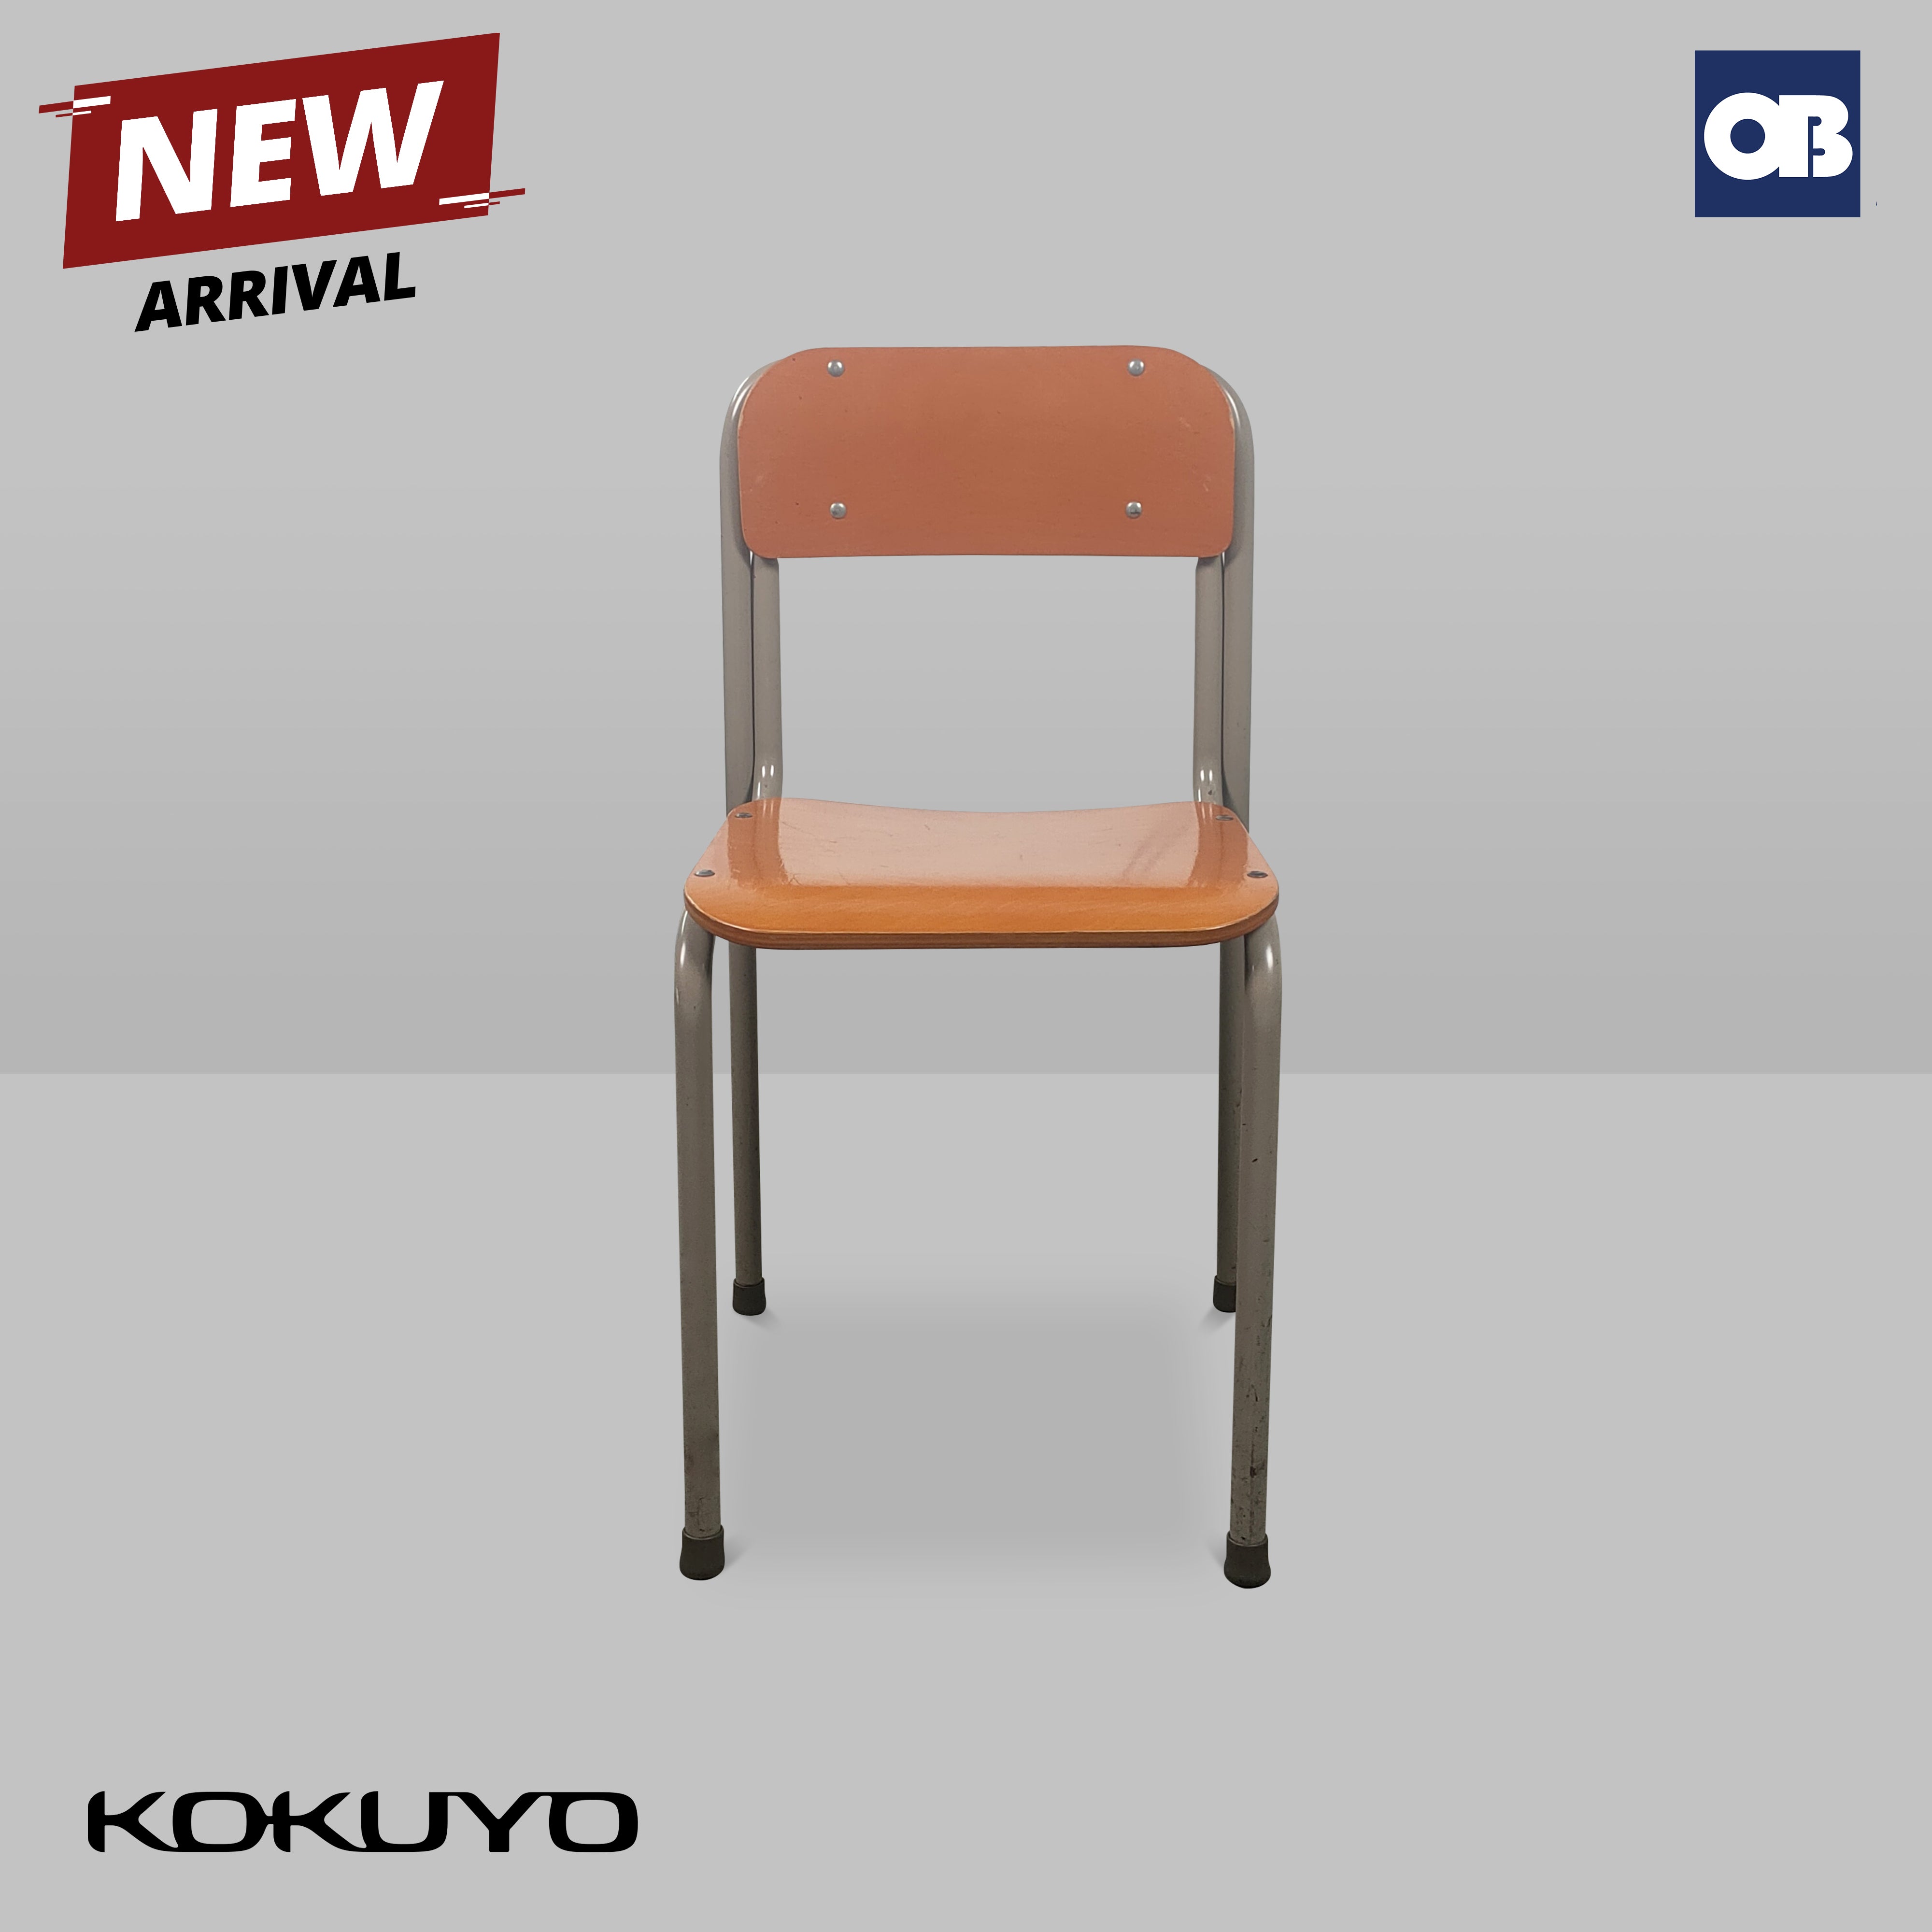 Kokuyo Study Table & Chair